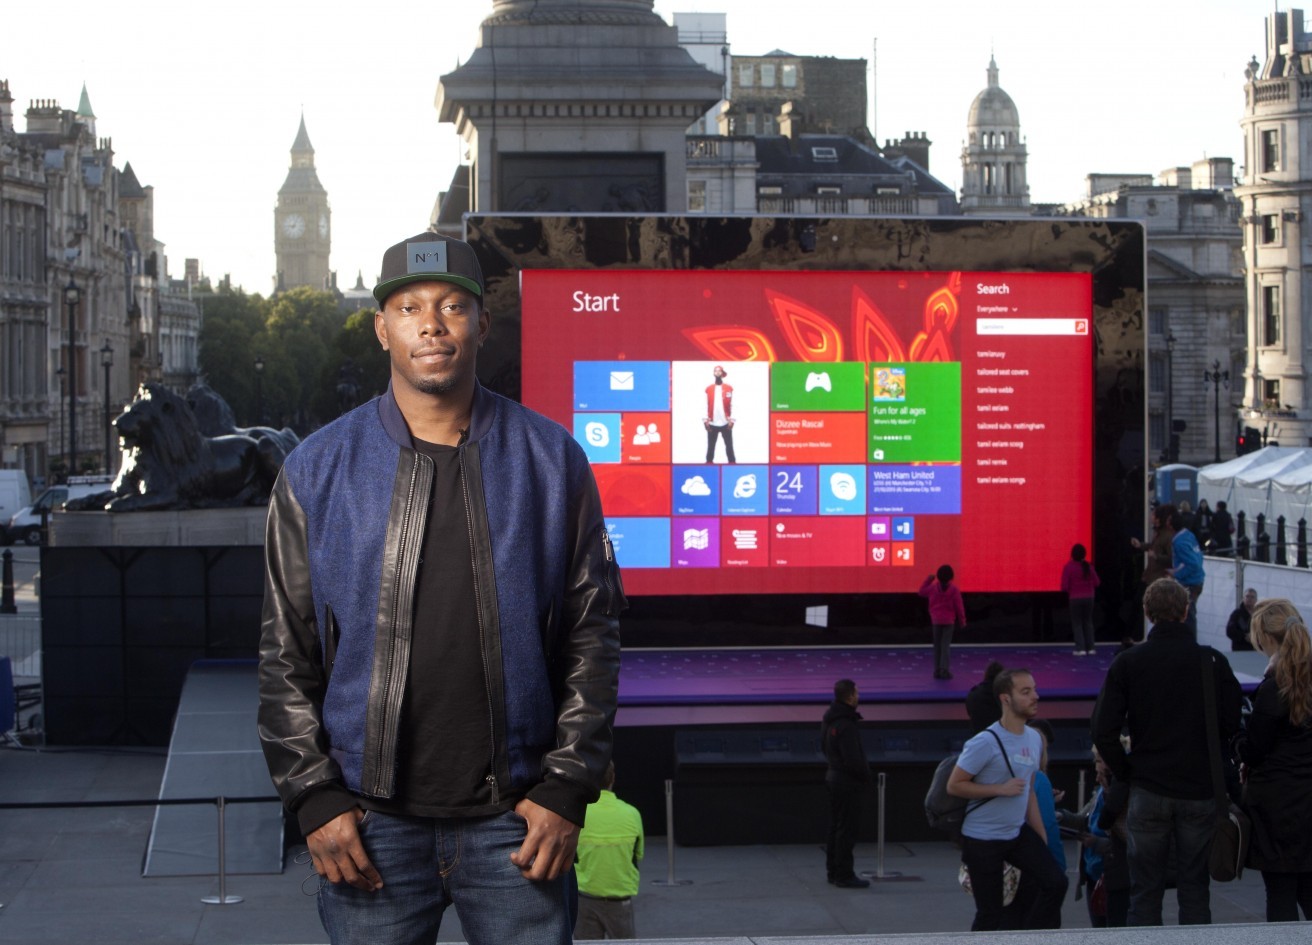 Quảng cáo Surface Pro sử dụng nguyên liệu Hip Hop - Đây có lẽ là một trong những màn dàn dựng phức tạp nhất trong các chiến dịch ra mắt máy tính